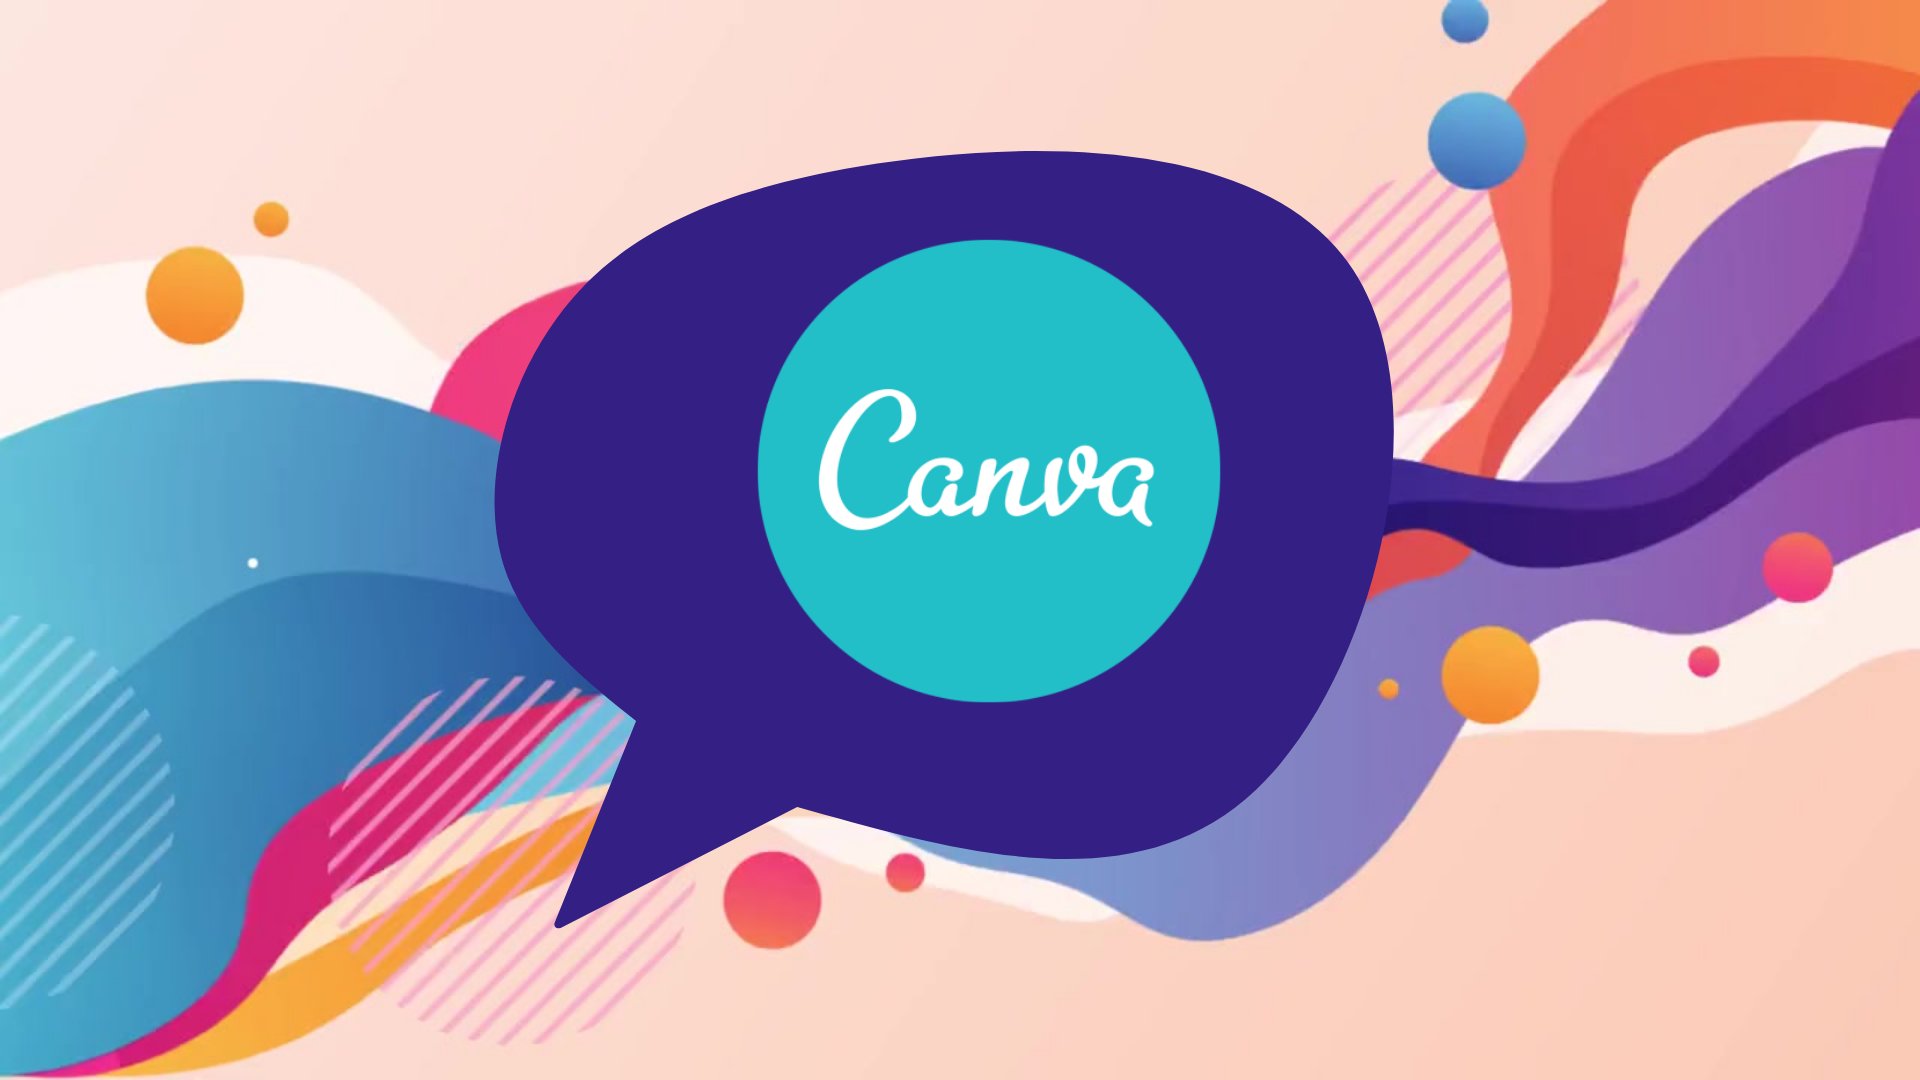 آموزش Canva برای مبتدیان: طراحی پوستر رسانه های اجتماعی با Canva